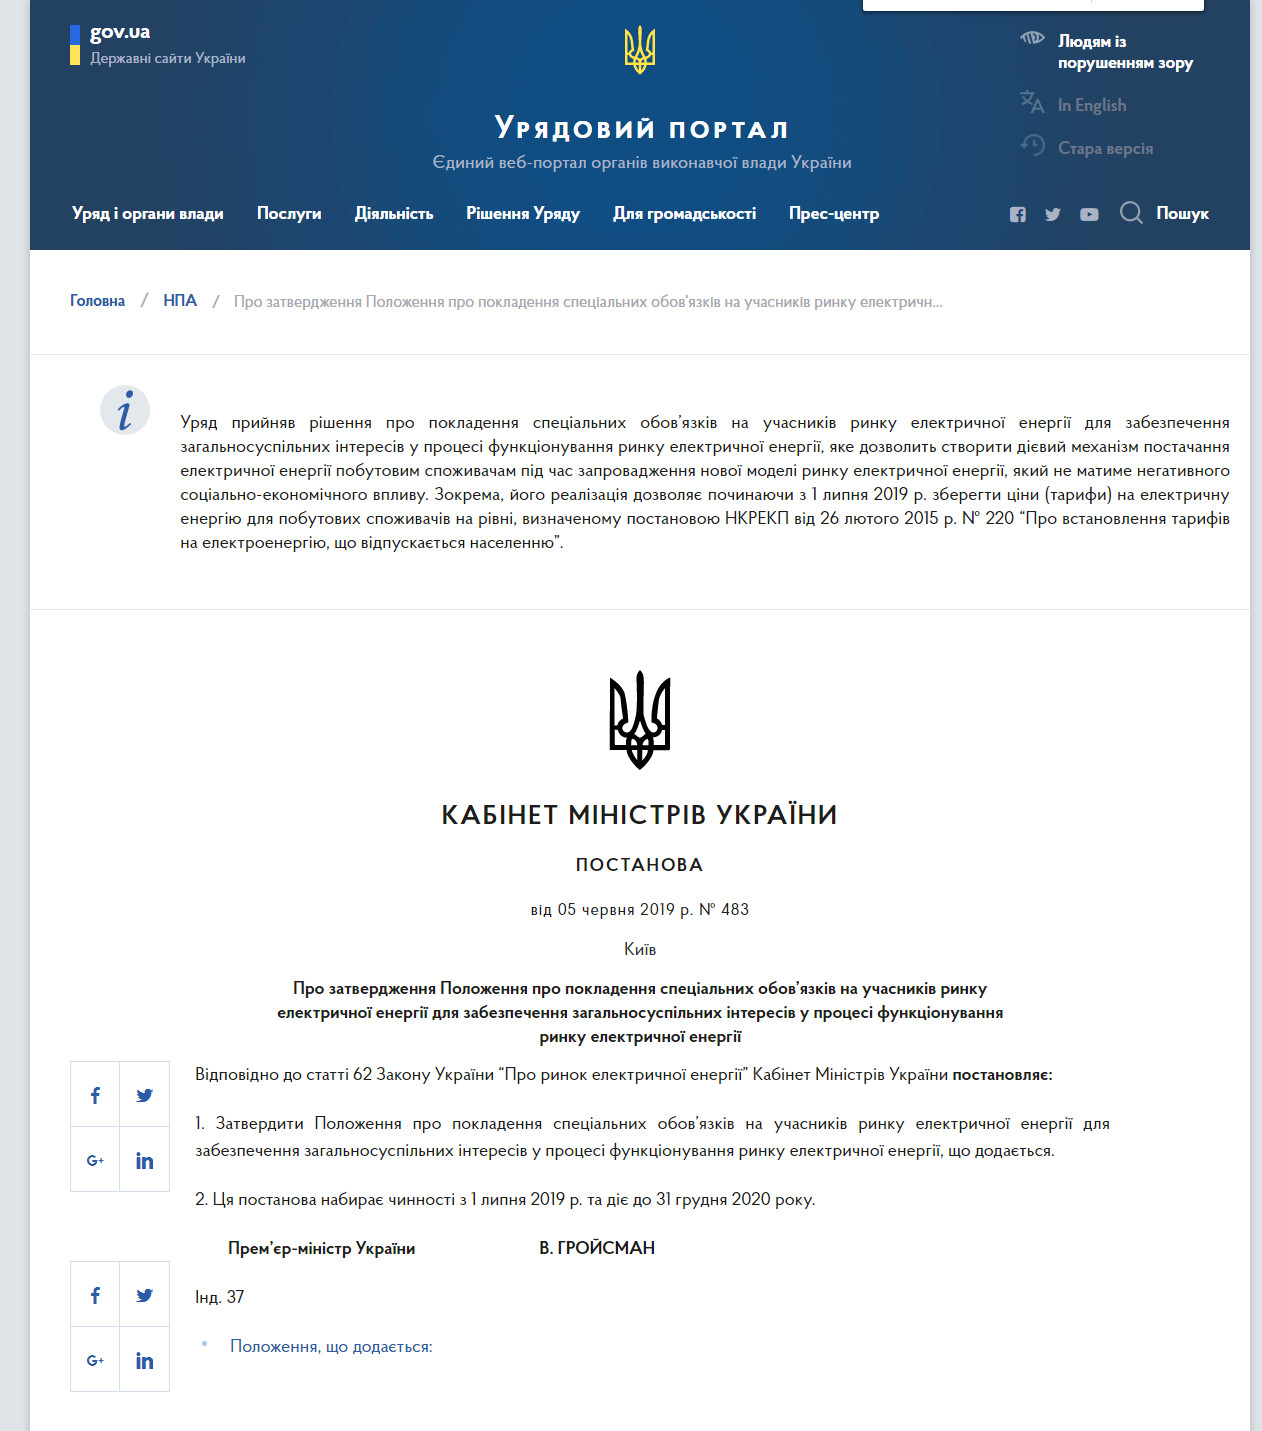 https://www.kmu.gov.ua/ua/npas/pro-zatverdzhennya-polozhennya-pro-pokladennya-specialnih-obovyazkiv-na-uchasnikiv-rinku-t050619